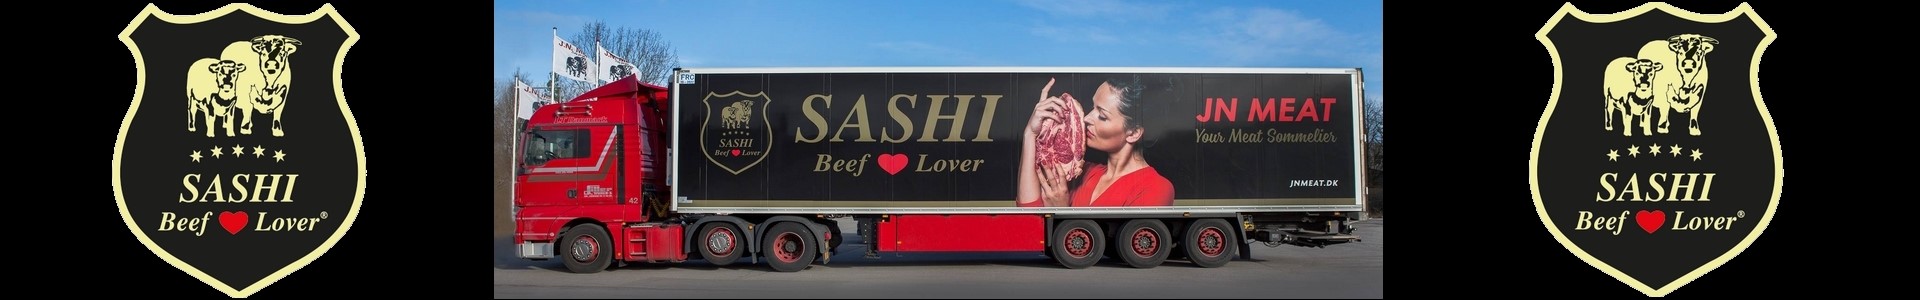 Sashi truck banner2.jpg